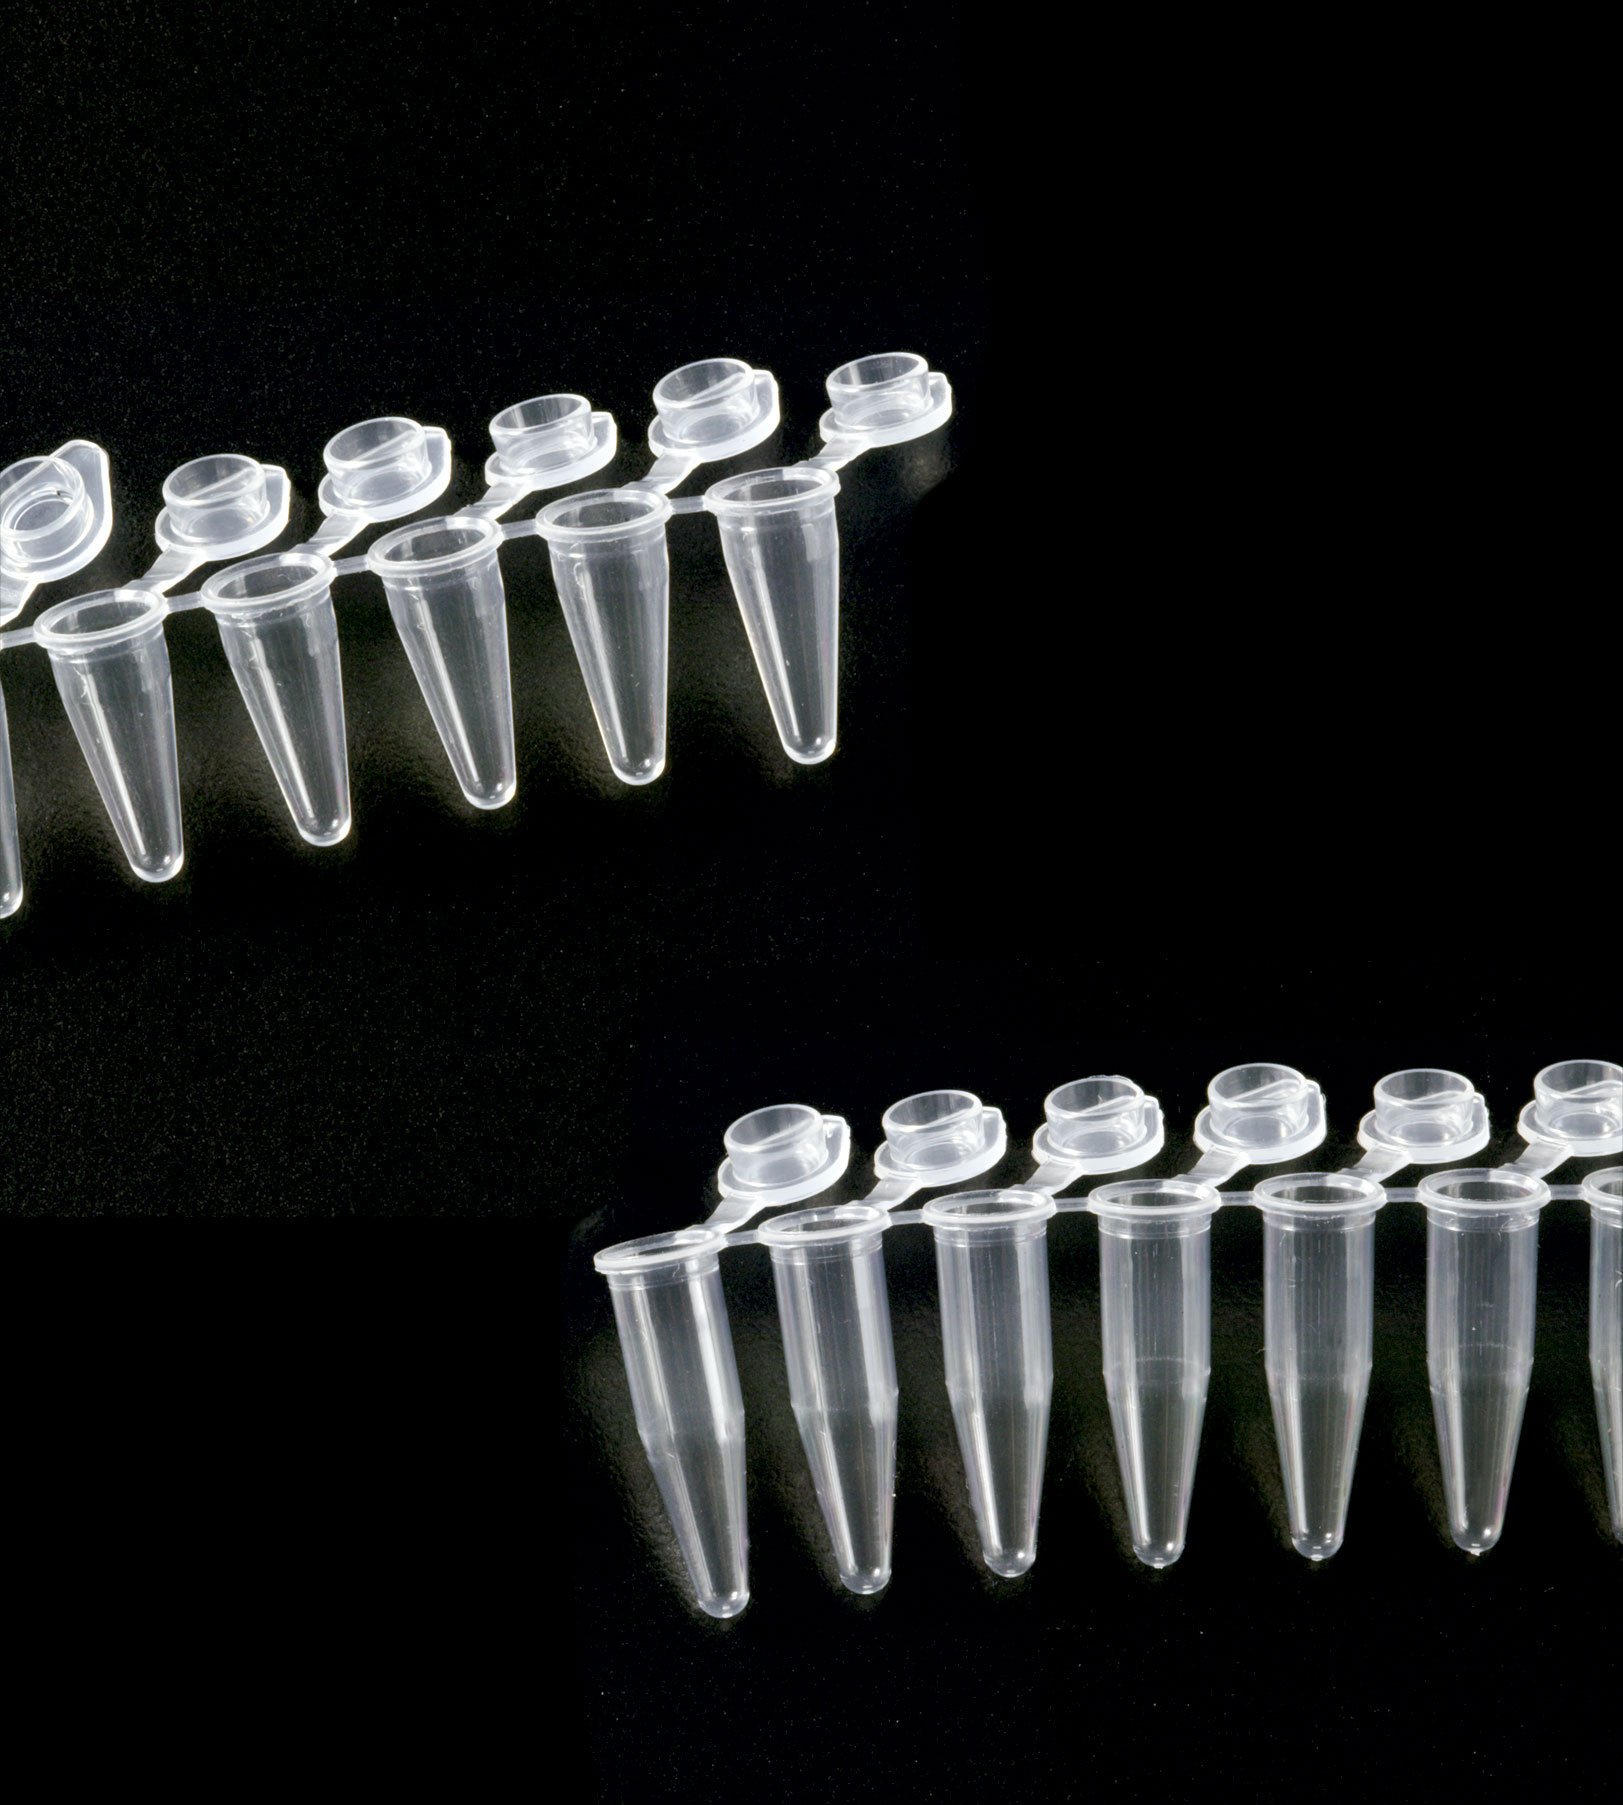 Tubo para PCR 0,2ml en tiras, tipo 1. DELTALAB. Tiras de 8 Tubo y 8 tapones unidos 'low profile'